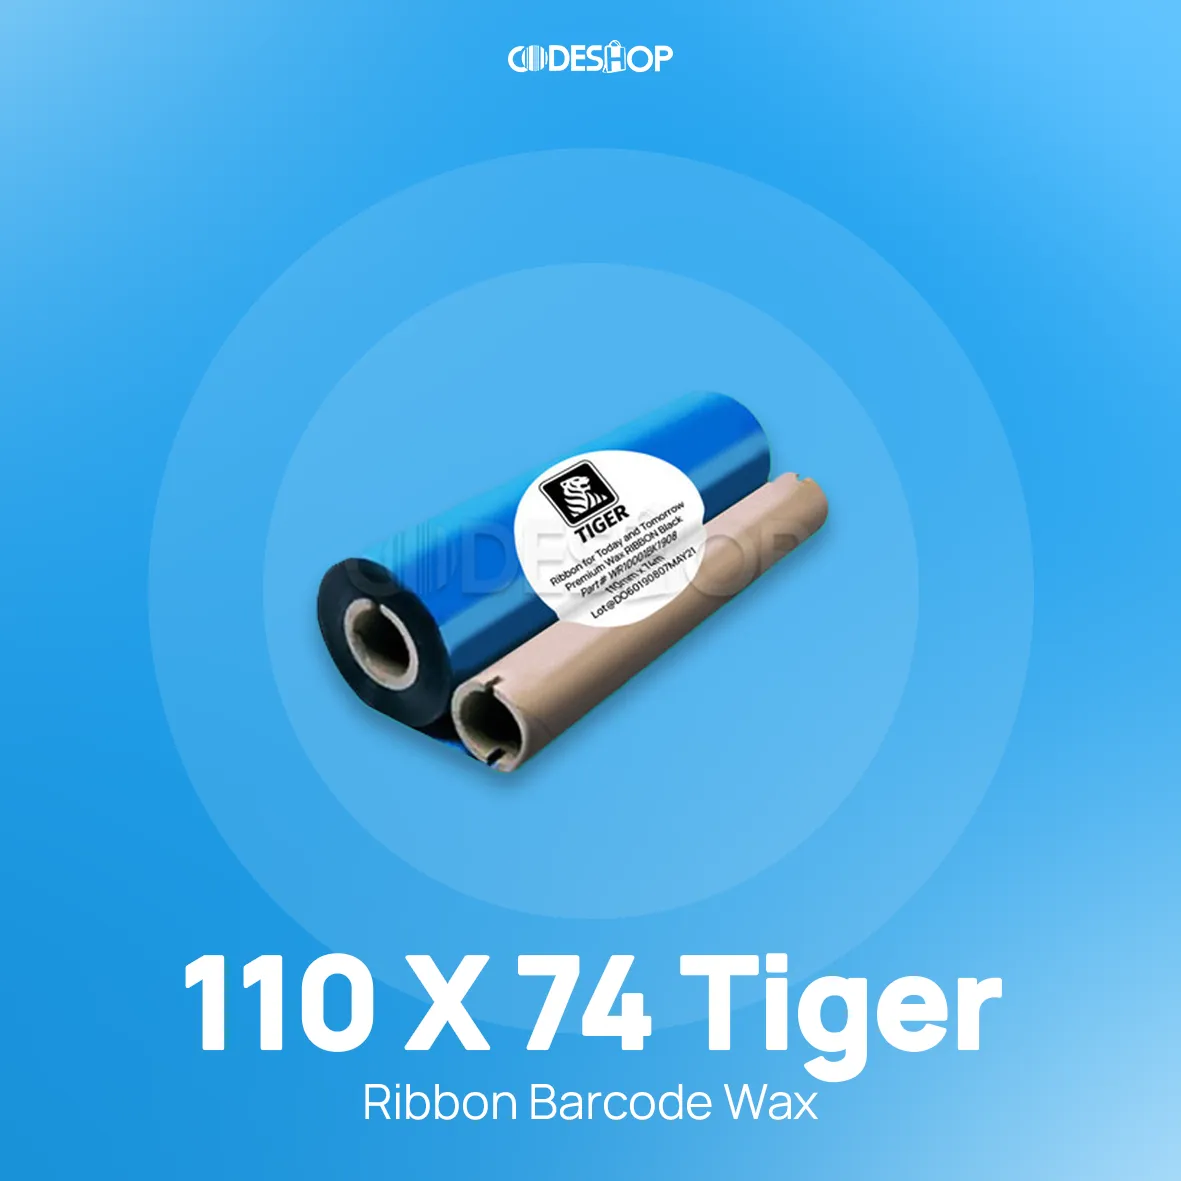 RIBBON BARCODE WAX 110X74 TIGER